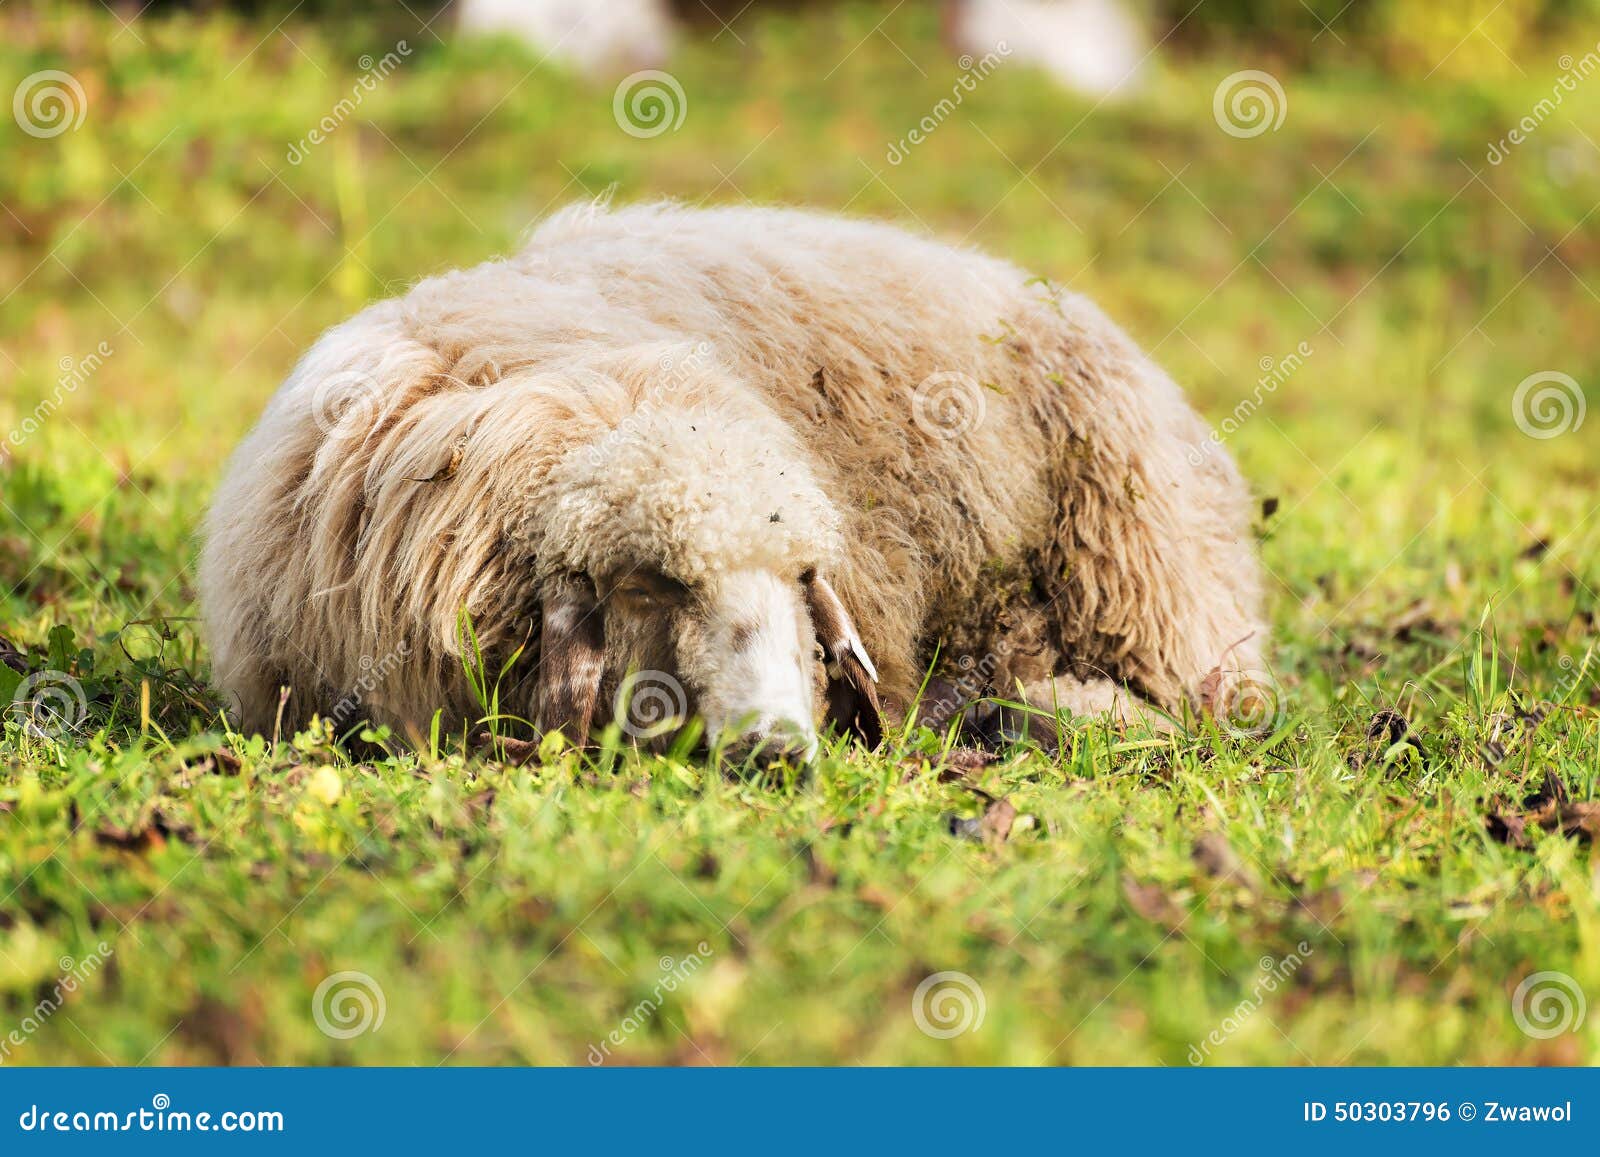 睡觉绵羊在秋天. 睡觉在一个草甸的绵羊的图片在秋天